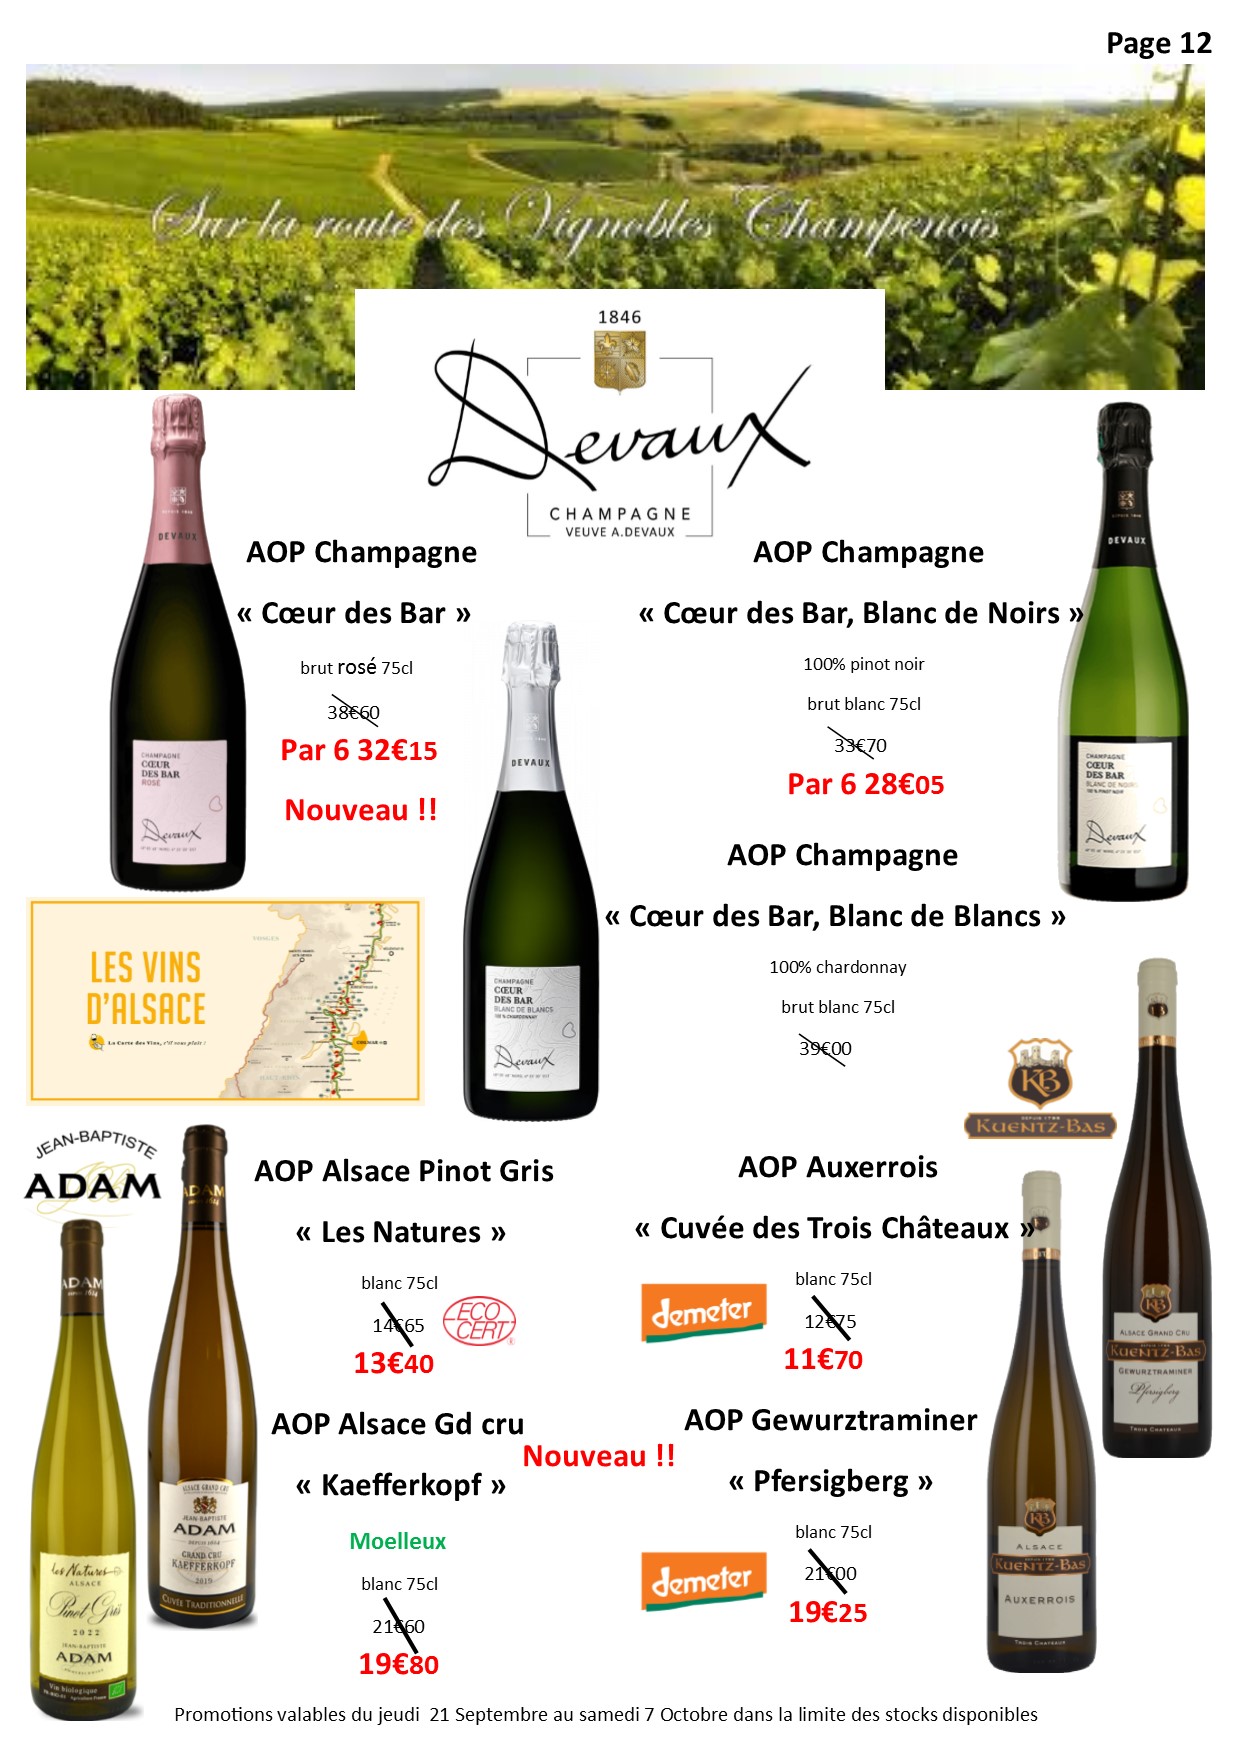 Champagne & Alsace - Caves du Tour'Billon - Pont-de-Beauvoisin